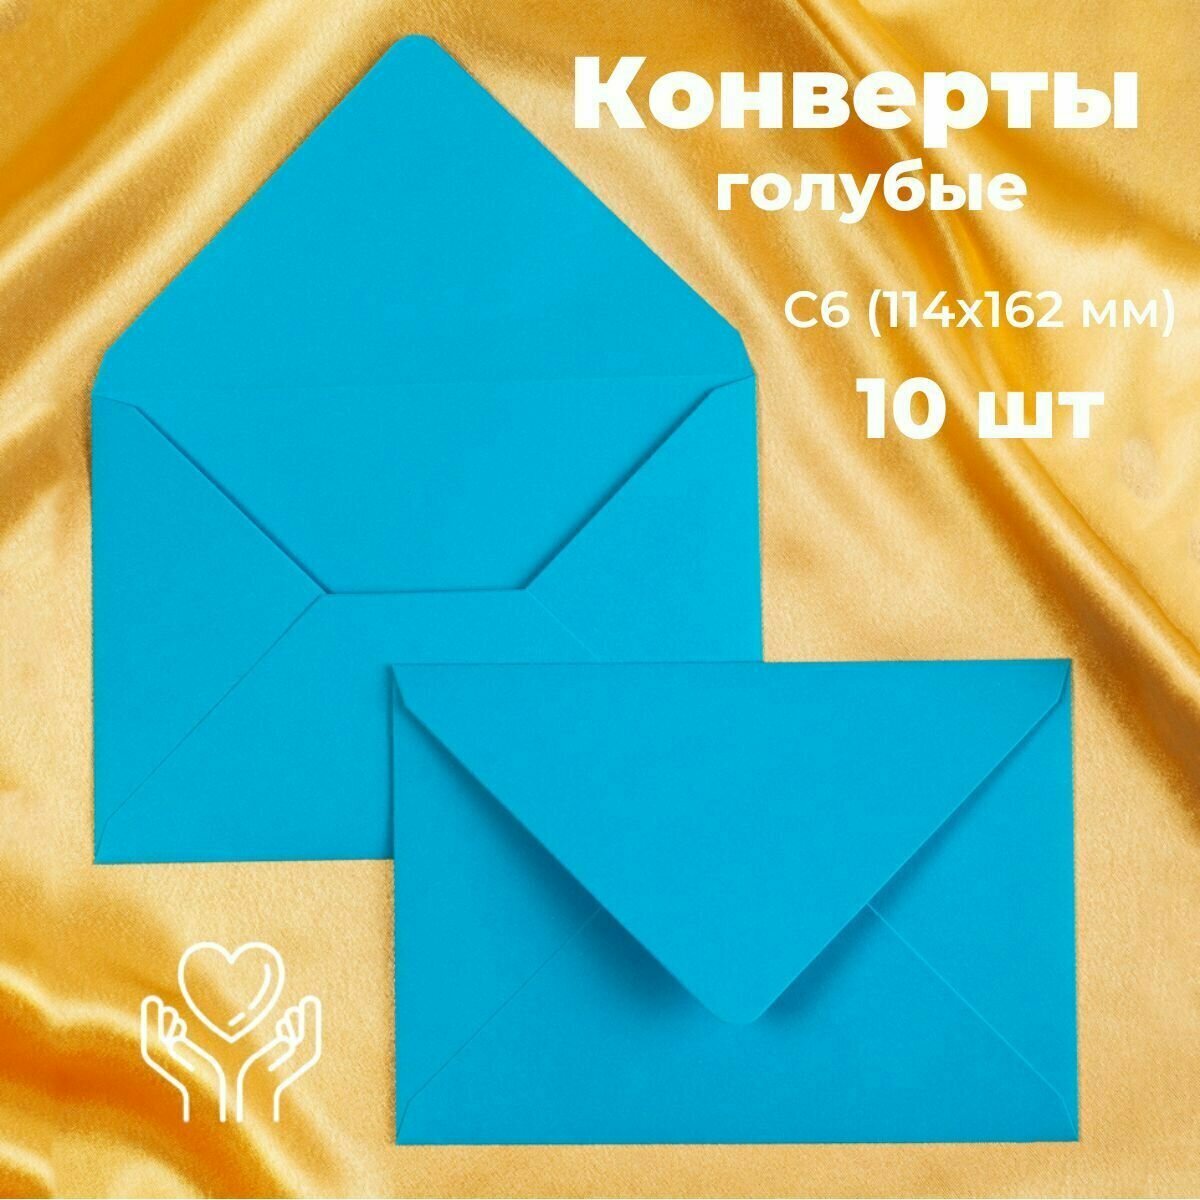 Голубые конверты бумажные для пригласительных, С6 114х162мм - набор 10 шт. цветные